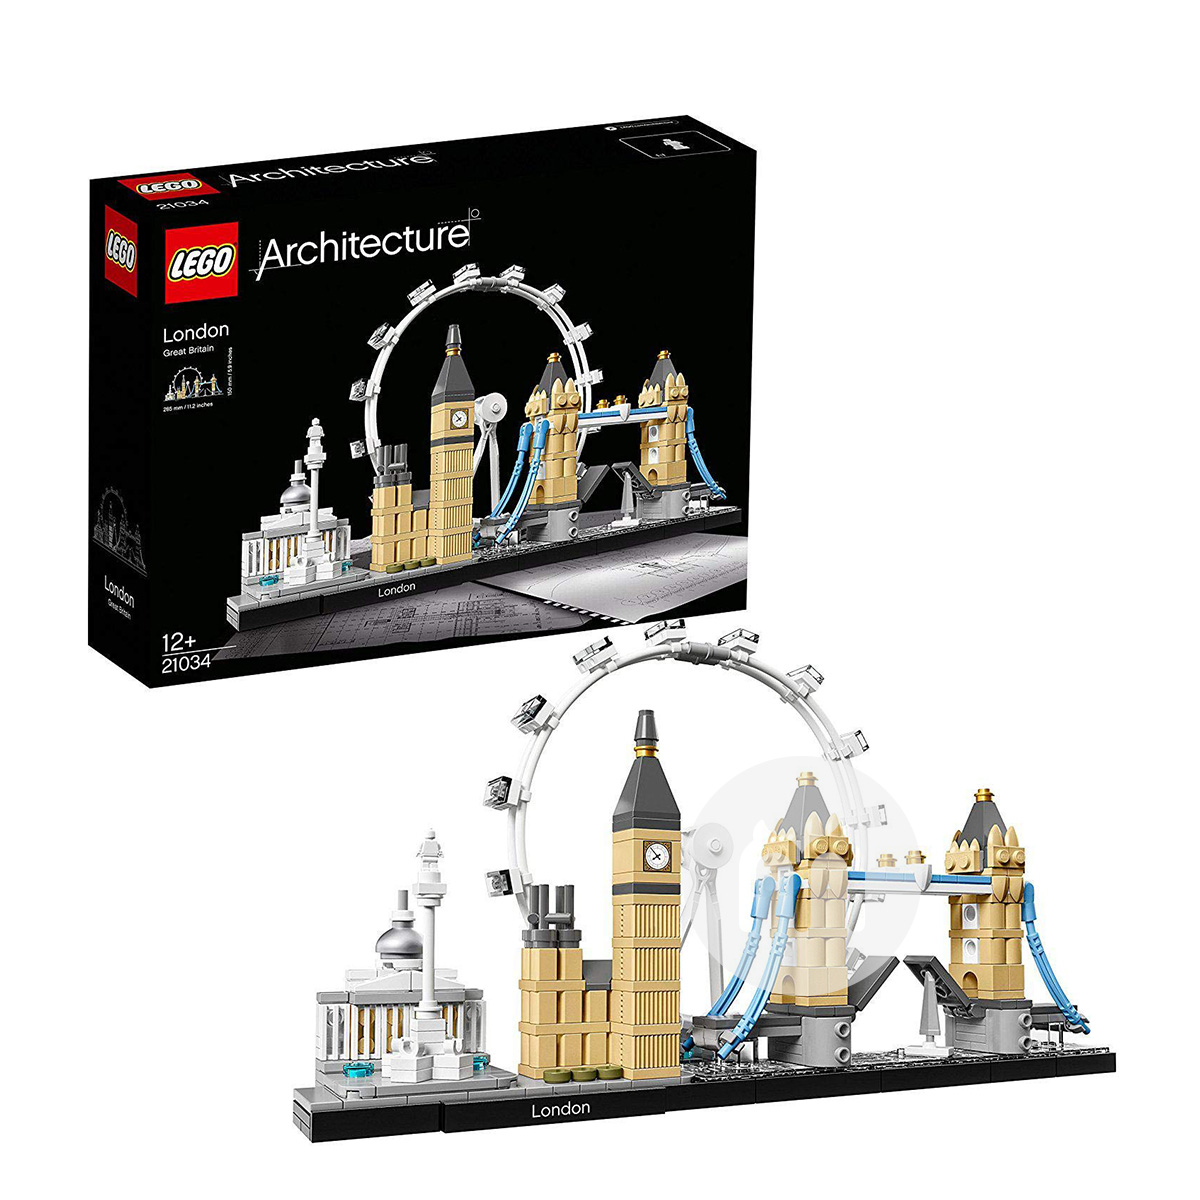 LEGO 丹麥樂高建築系列21034倫敦 海外本土原版